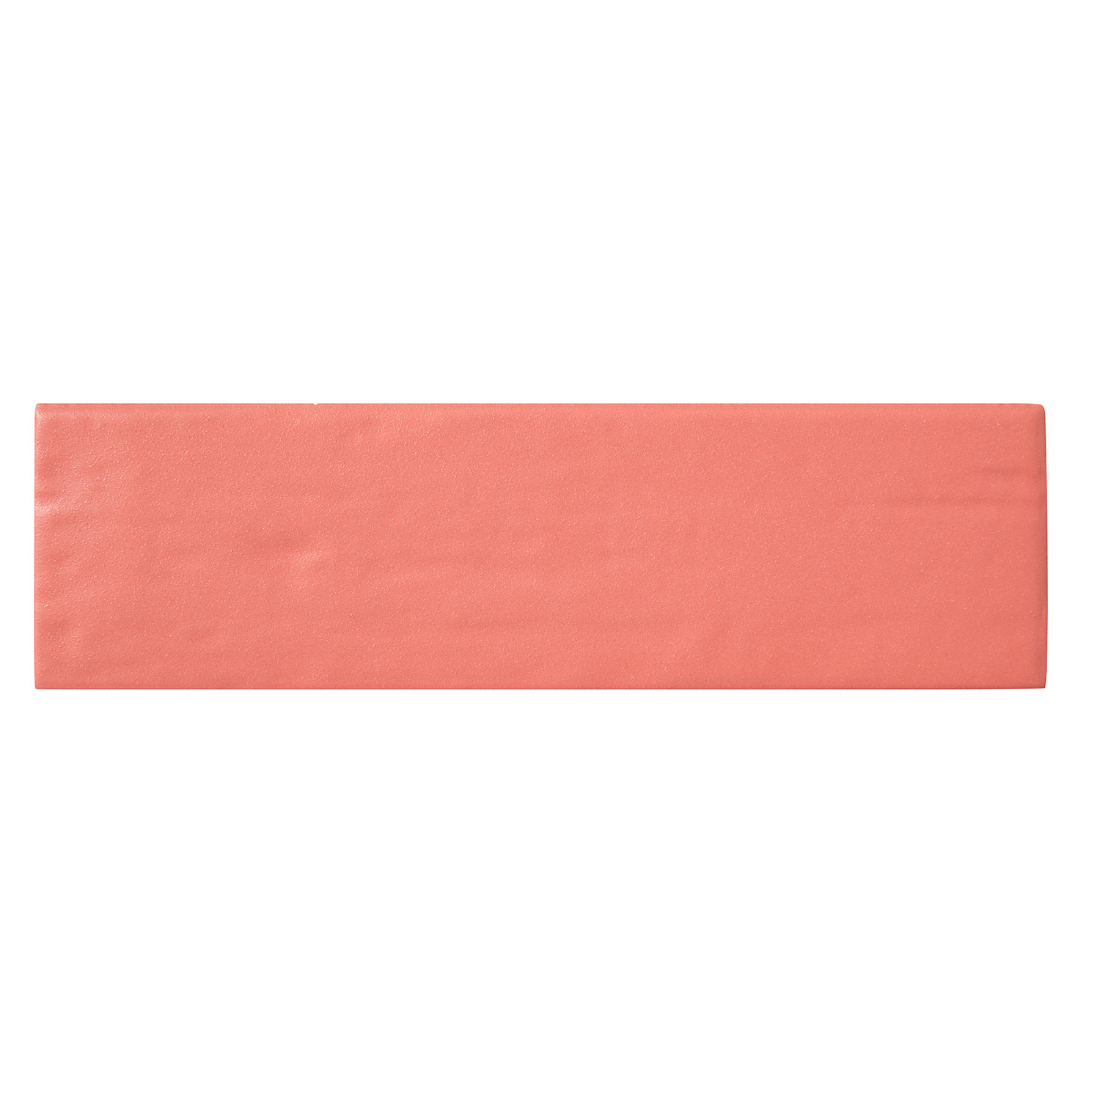 Color Market Flamingo 6.5x23cm (25869E)